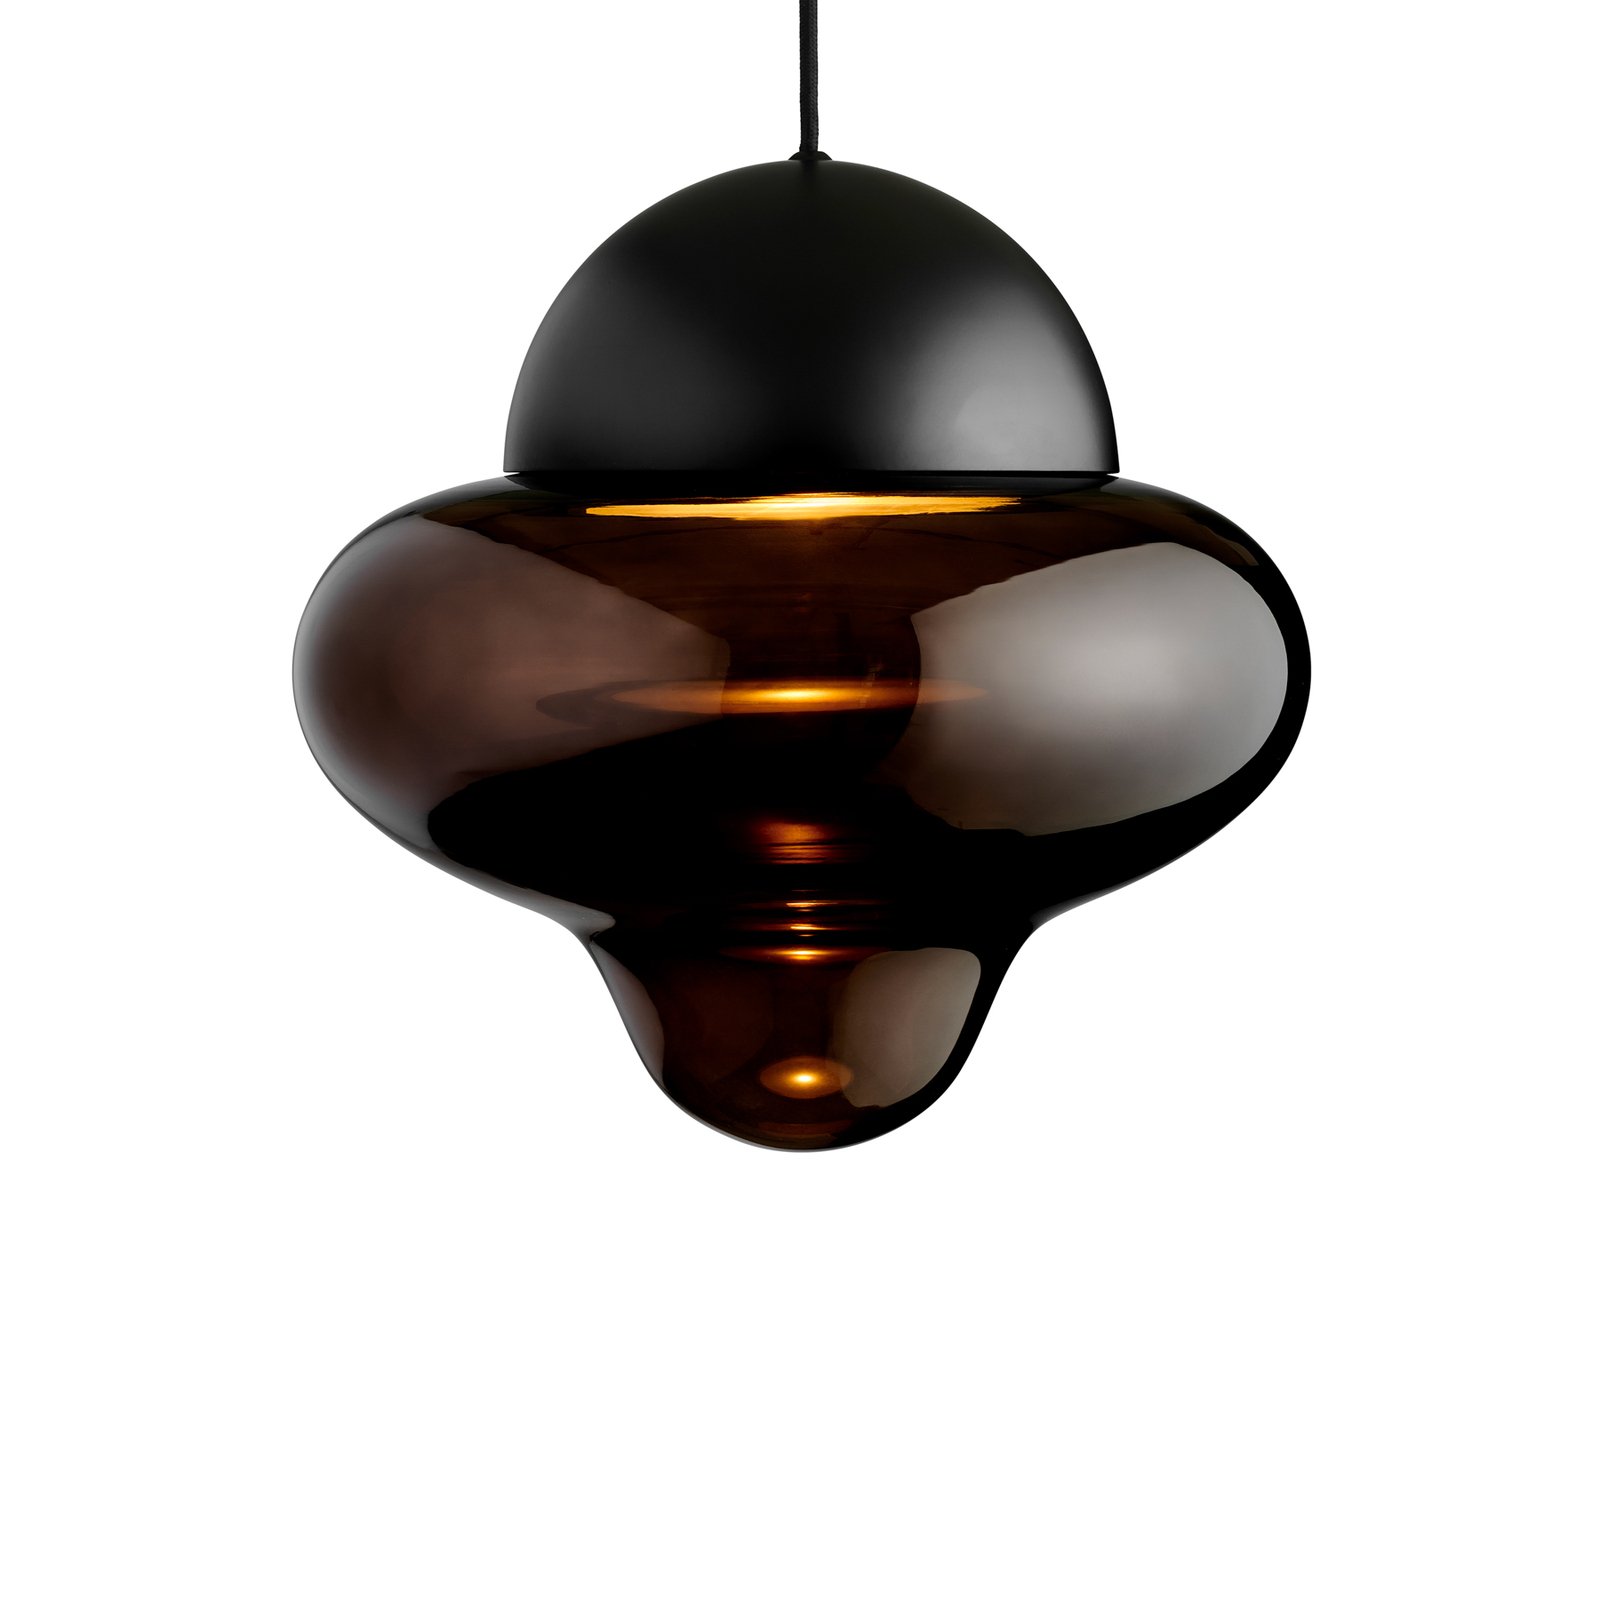 LED-Hängeleuchte Nutty XL, braun / schwarz, Ø 30 cm, Glas